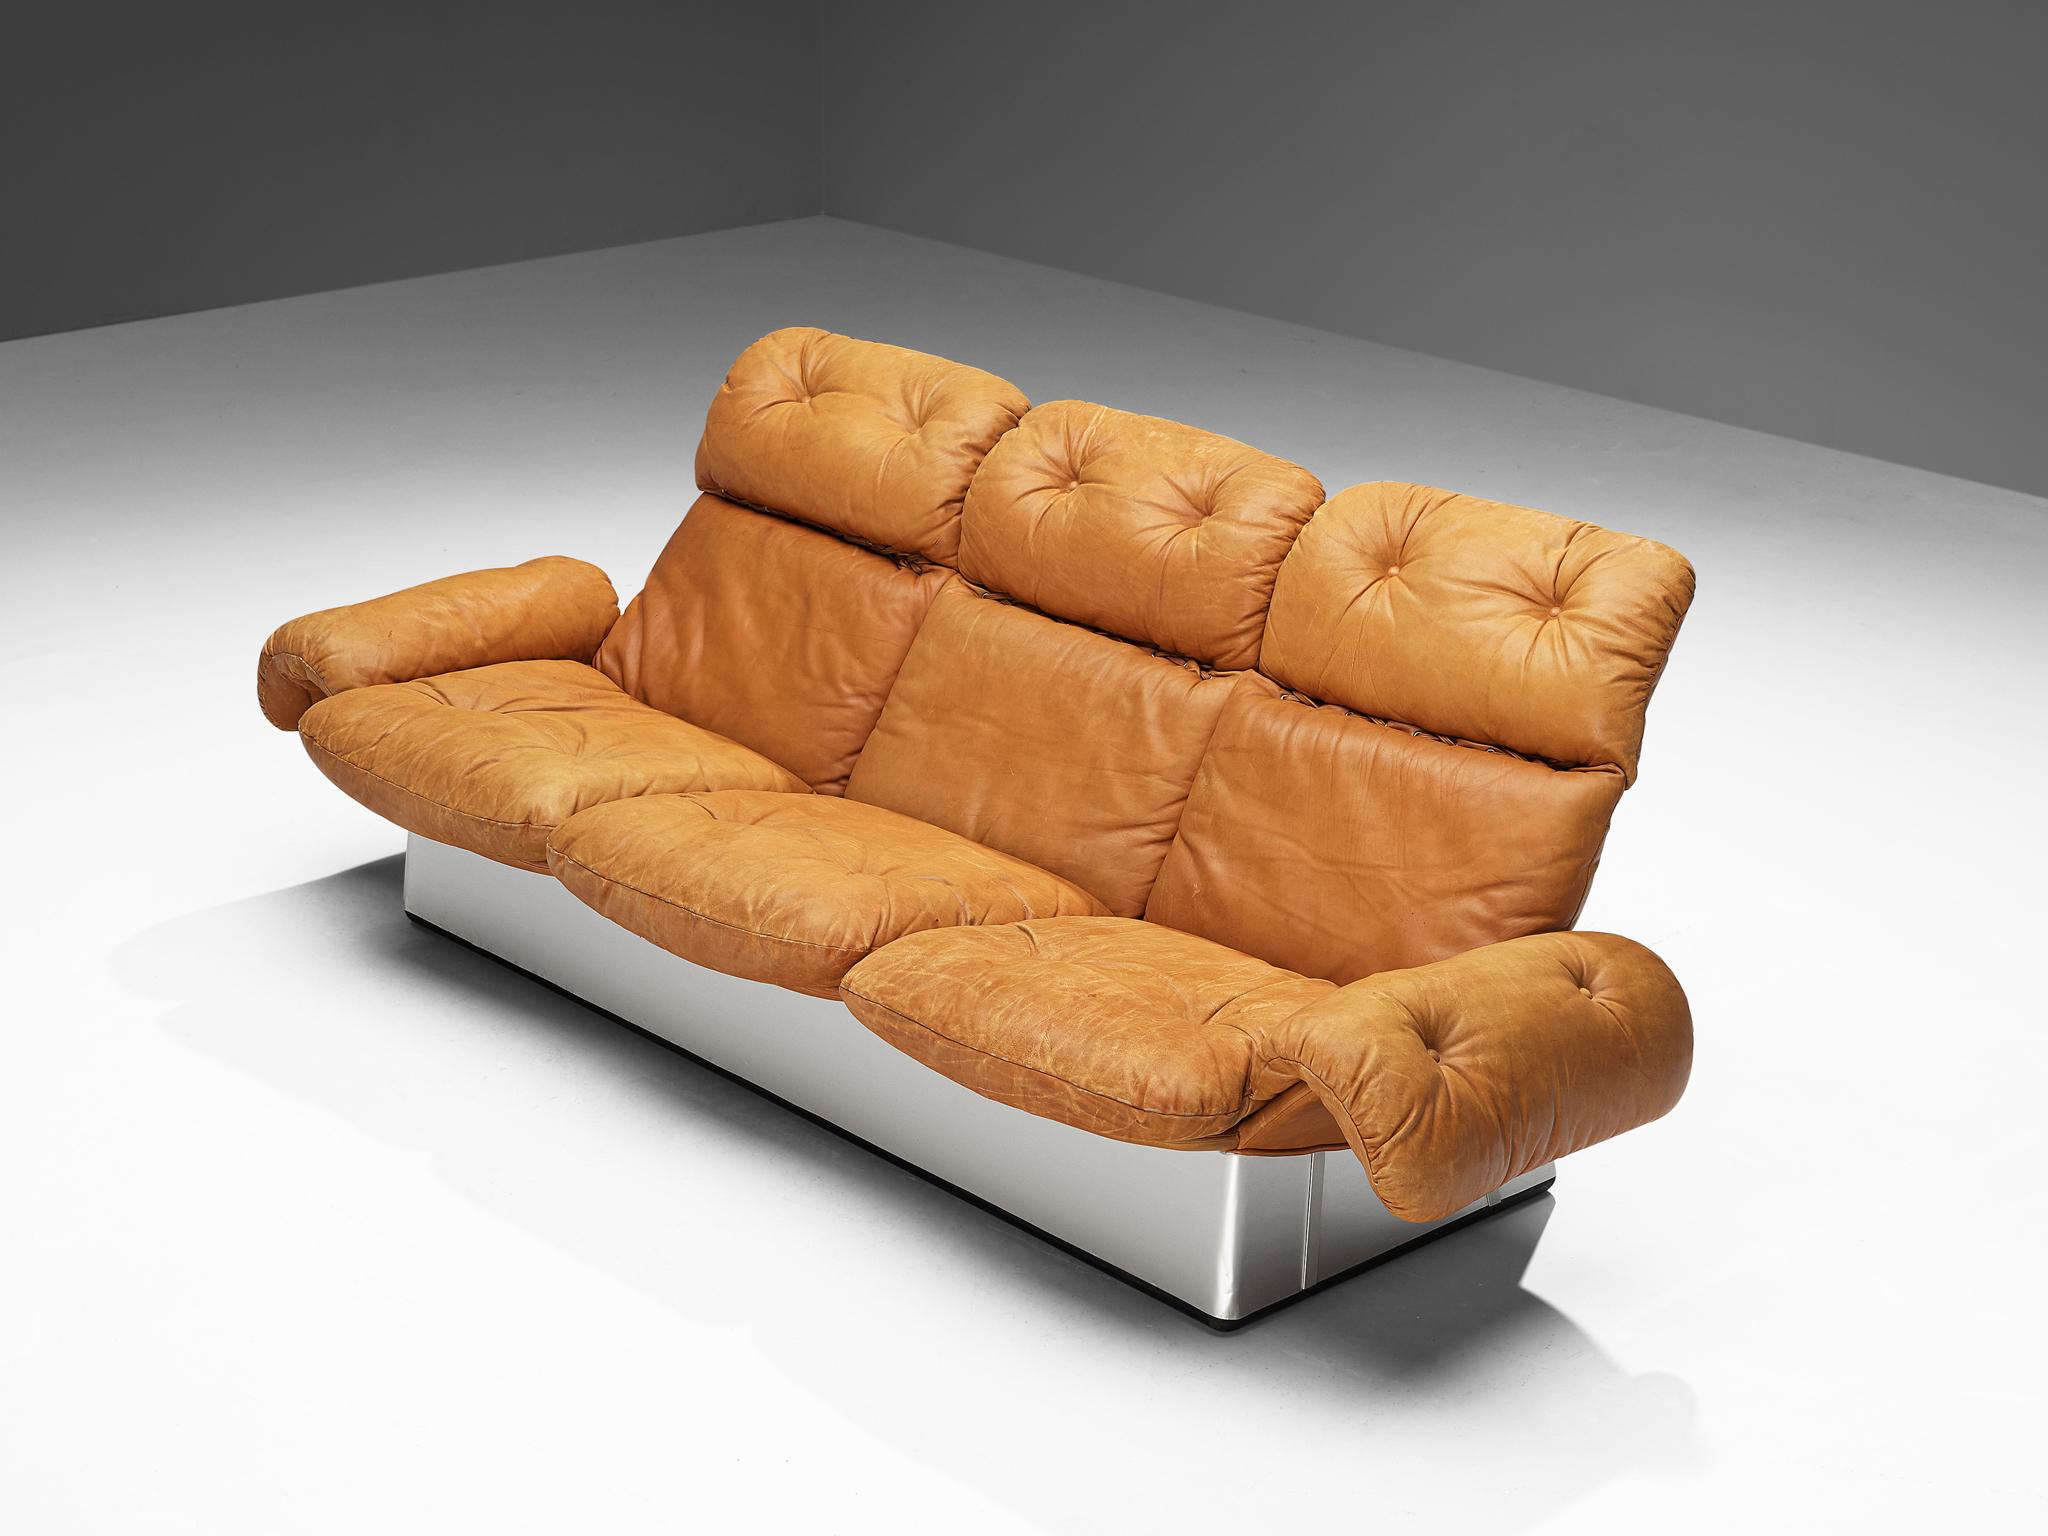 Sofa, Aluminium, Leder, Italien 1970er Jahre

Bequemes Sofa aus den 1970er Jahren. Dieses Sofa repräsentiert die Essenz des Möbeldesigns der 1970er Jahre und geht über die strengen Konventionen der Moderne hinaus, indem es die verschiedenen